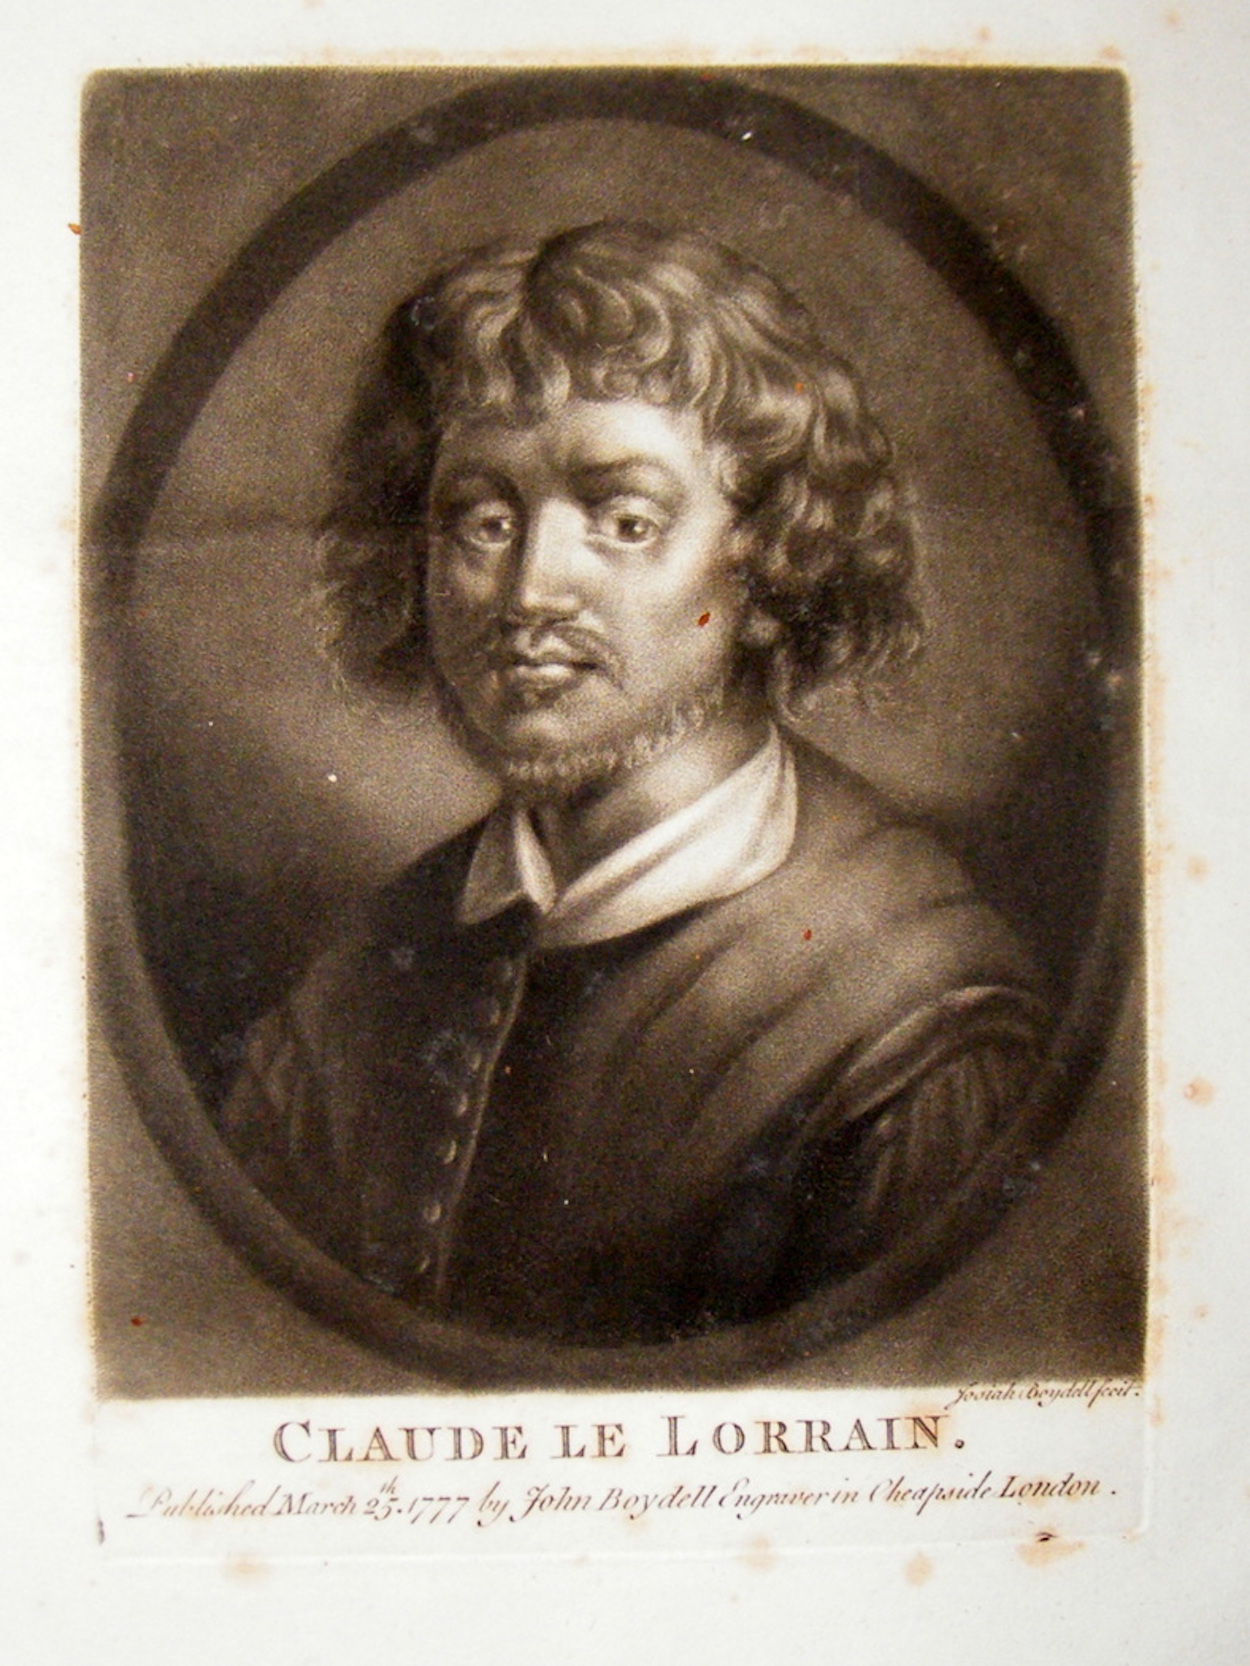 Claude Lorrain - c. 1600 - 23 November 1682